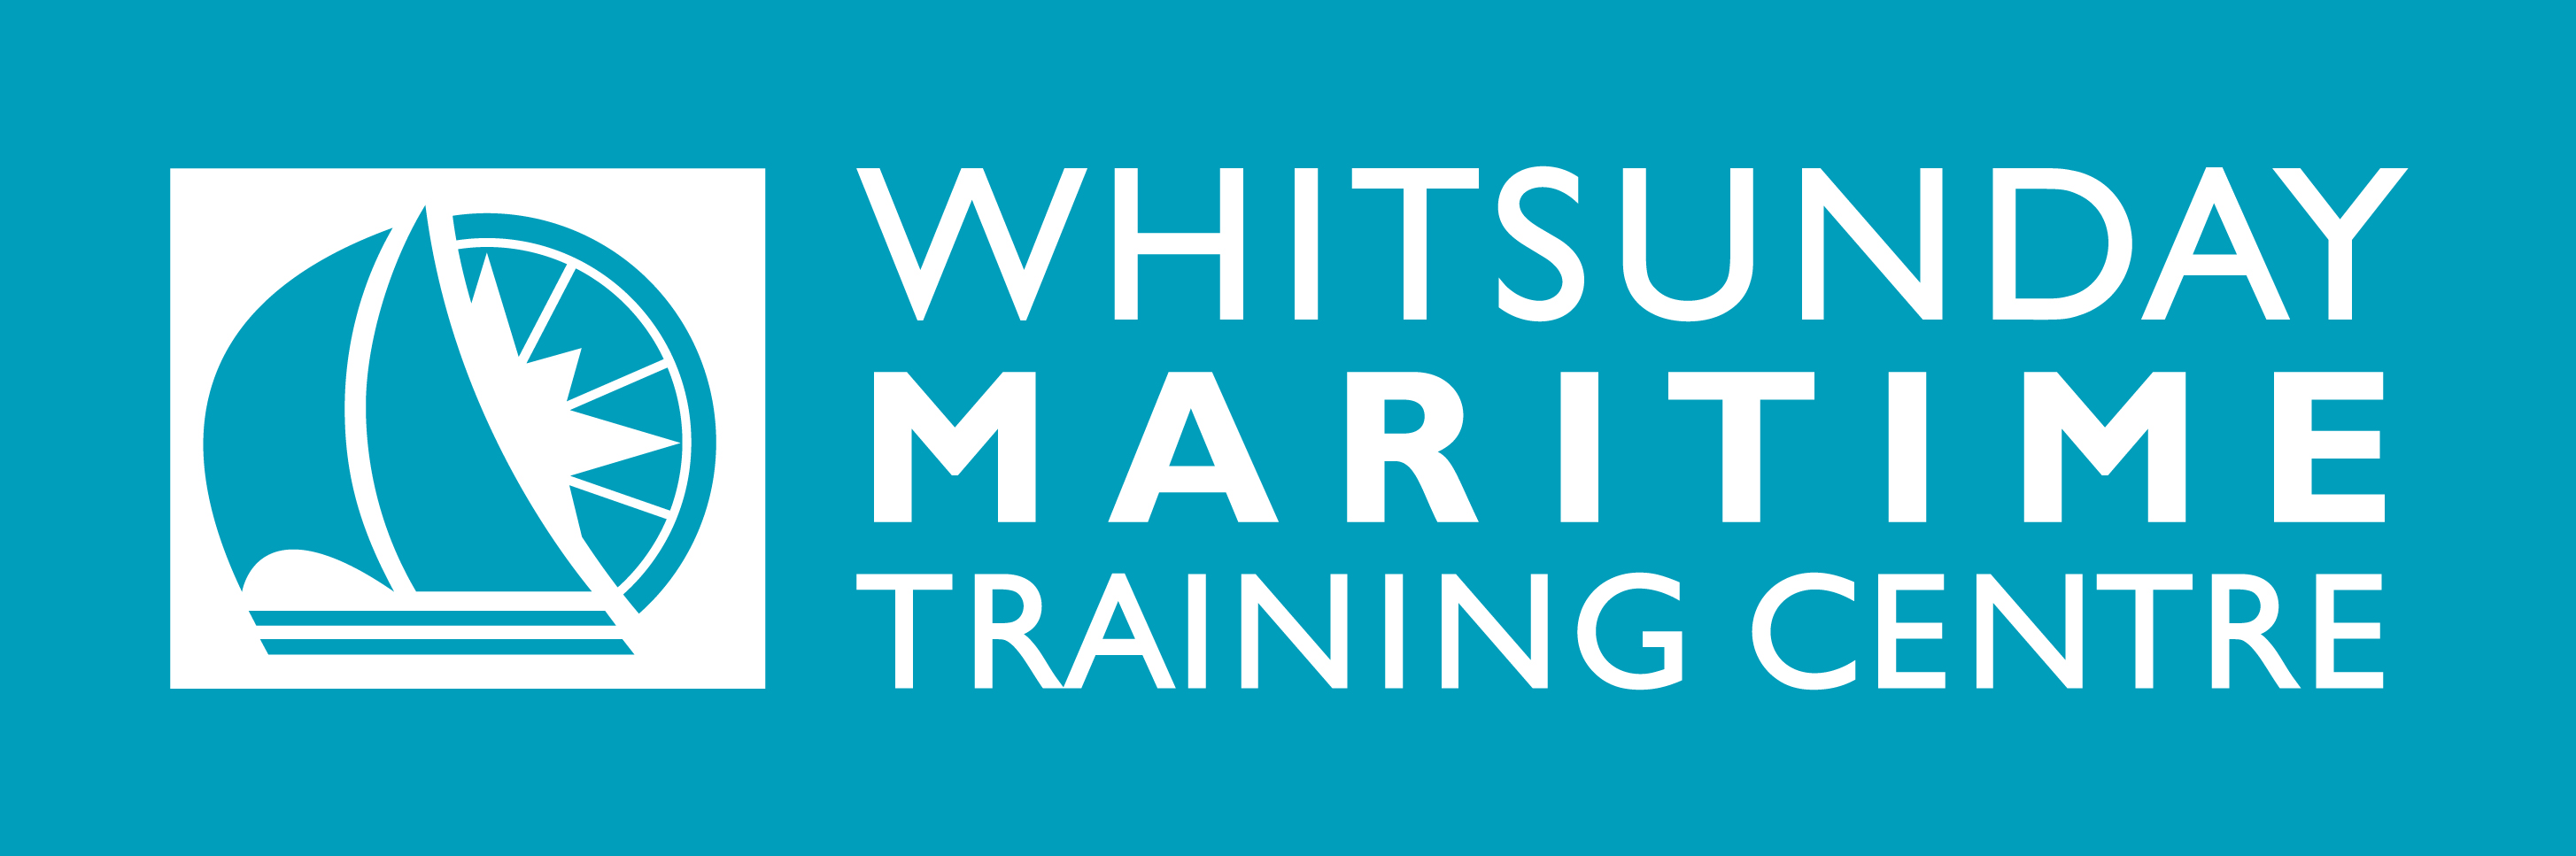 Whitsunday Maritime Training Centre